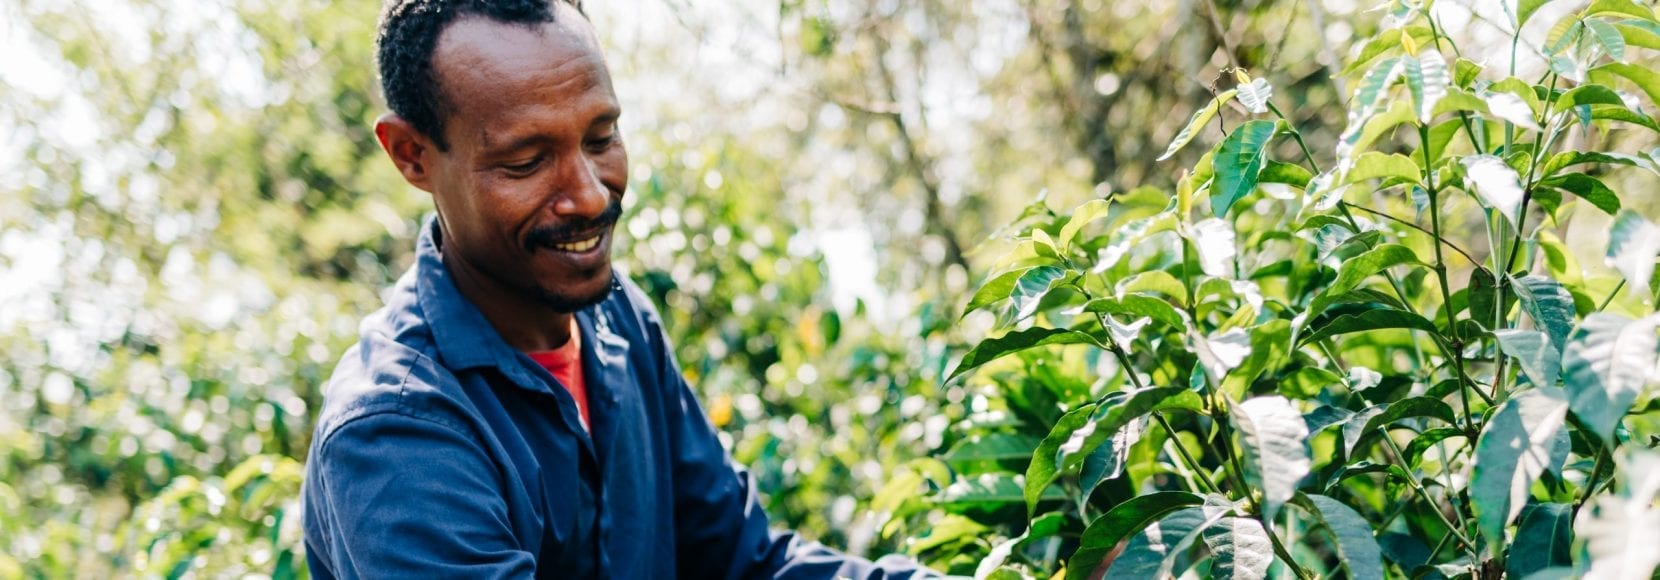 Adugna Feye is a coffee farmer in western Ethiopia